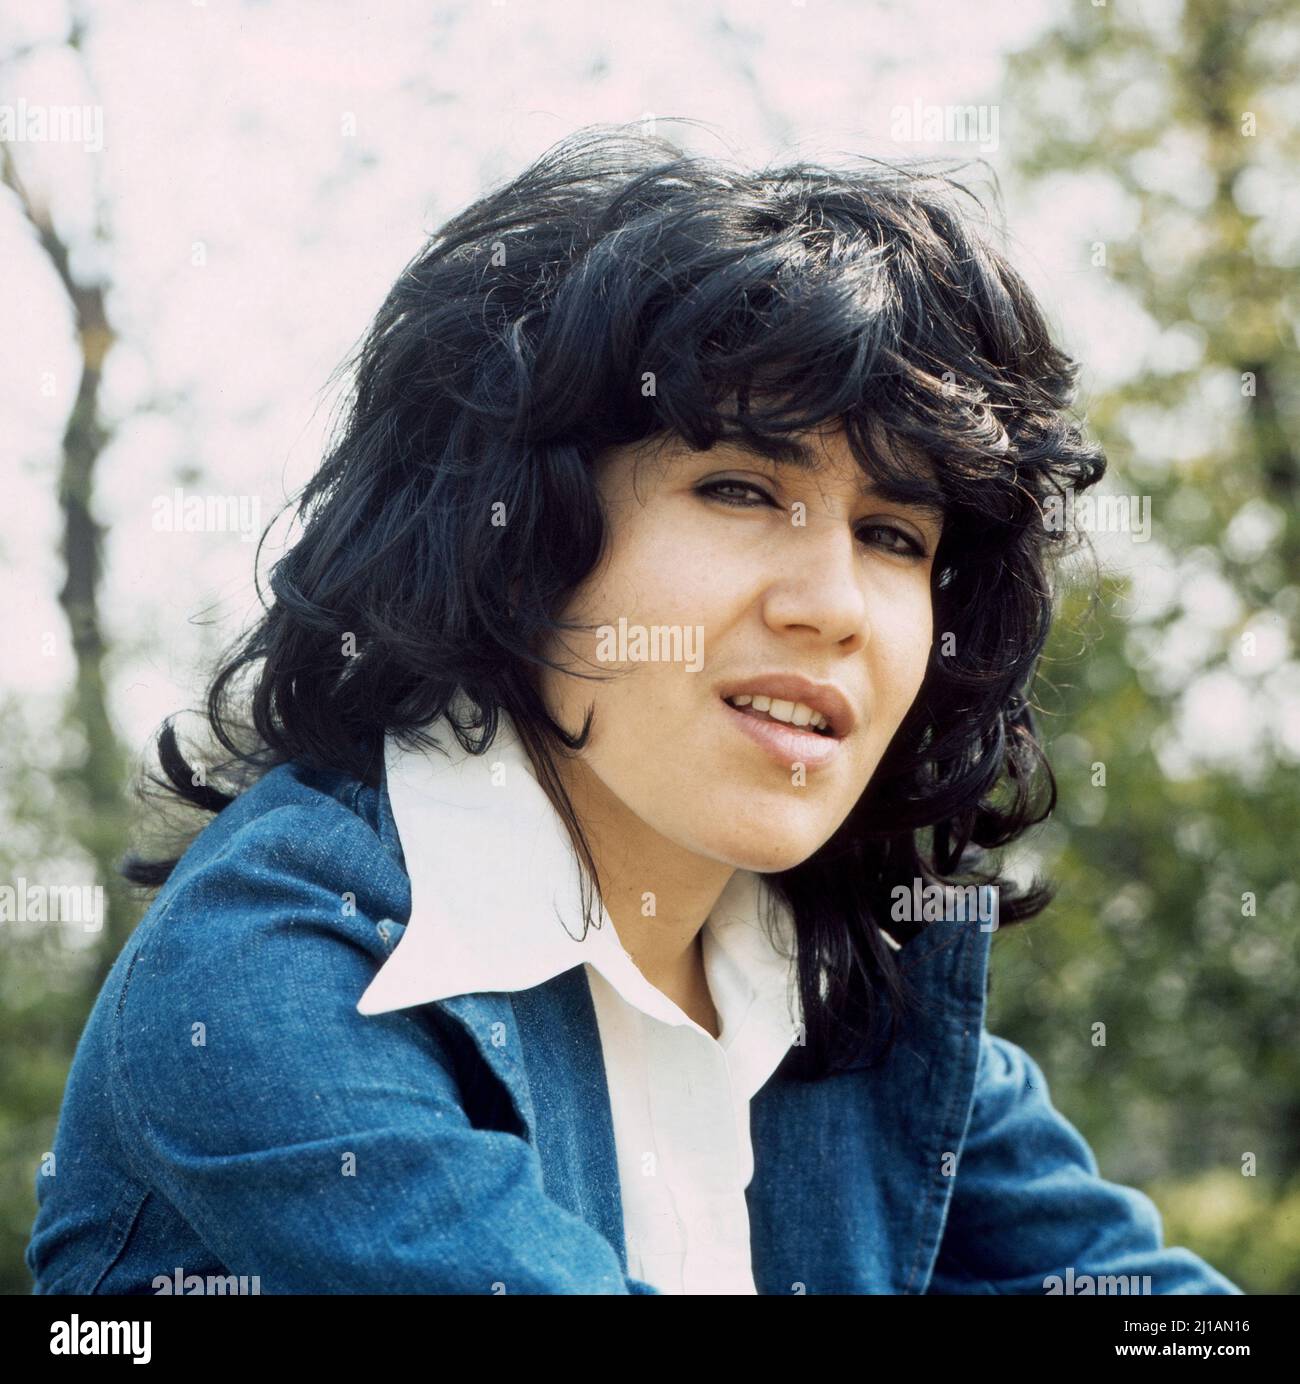 Esther Galil, israelische Chansonsängerin und Songschreiberin, Deutschland um 1974. Stock Photo